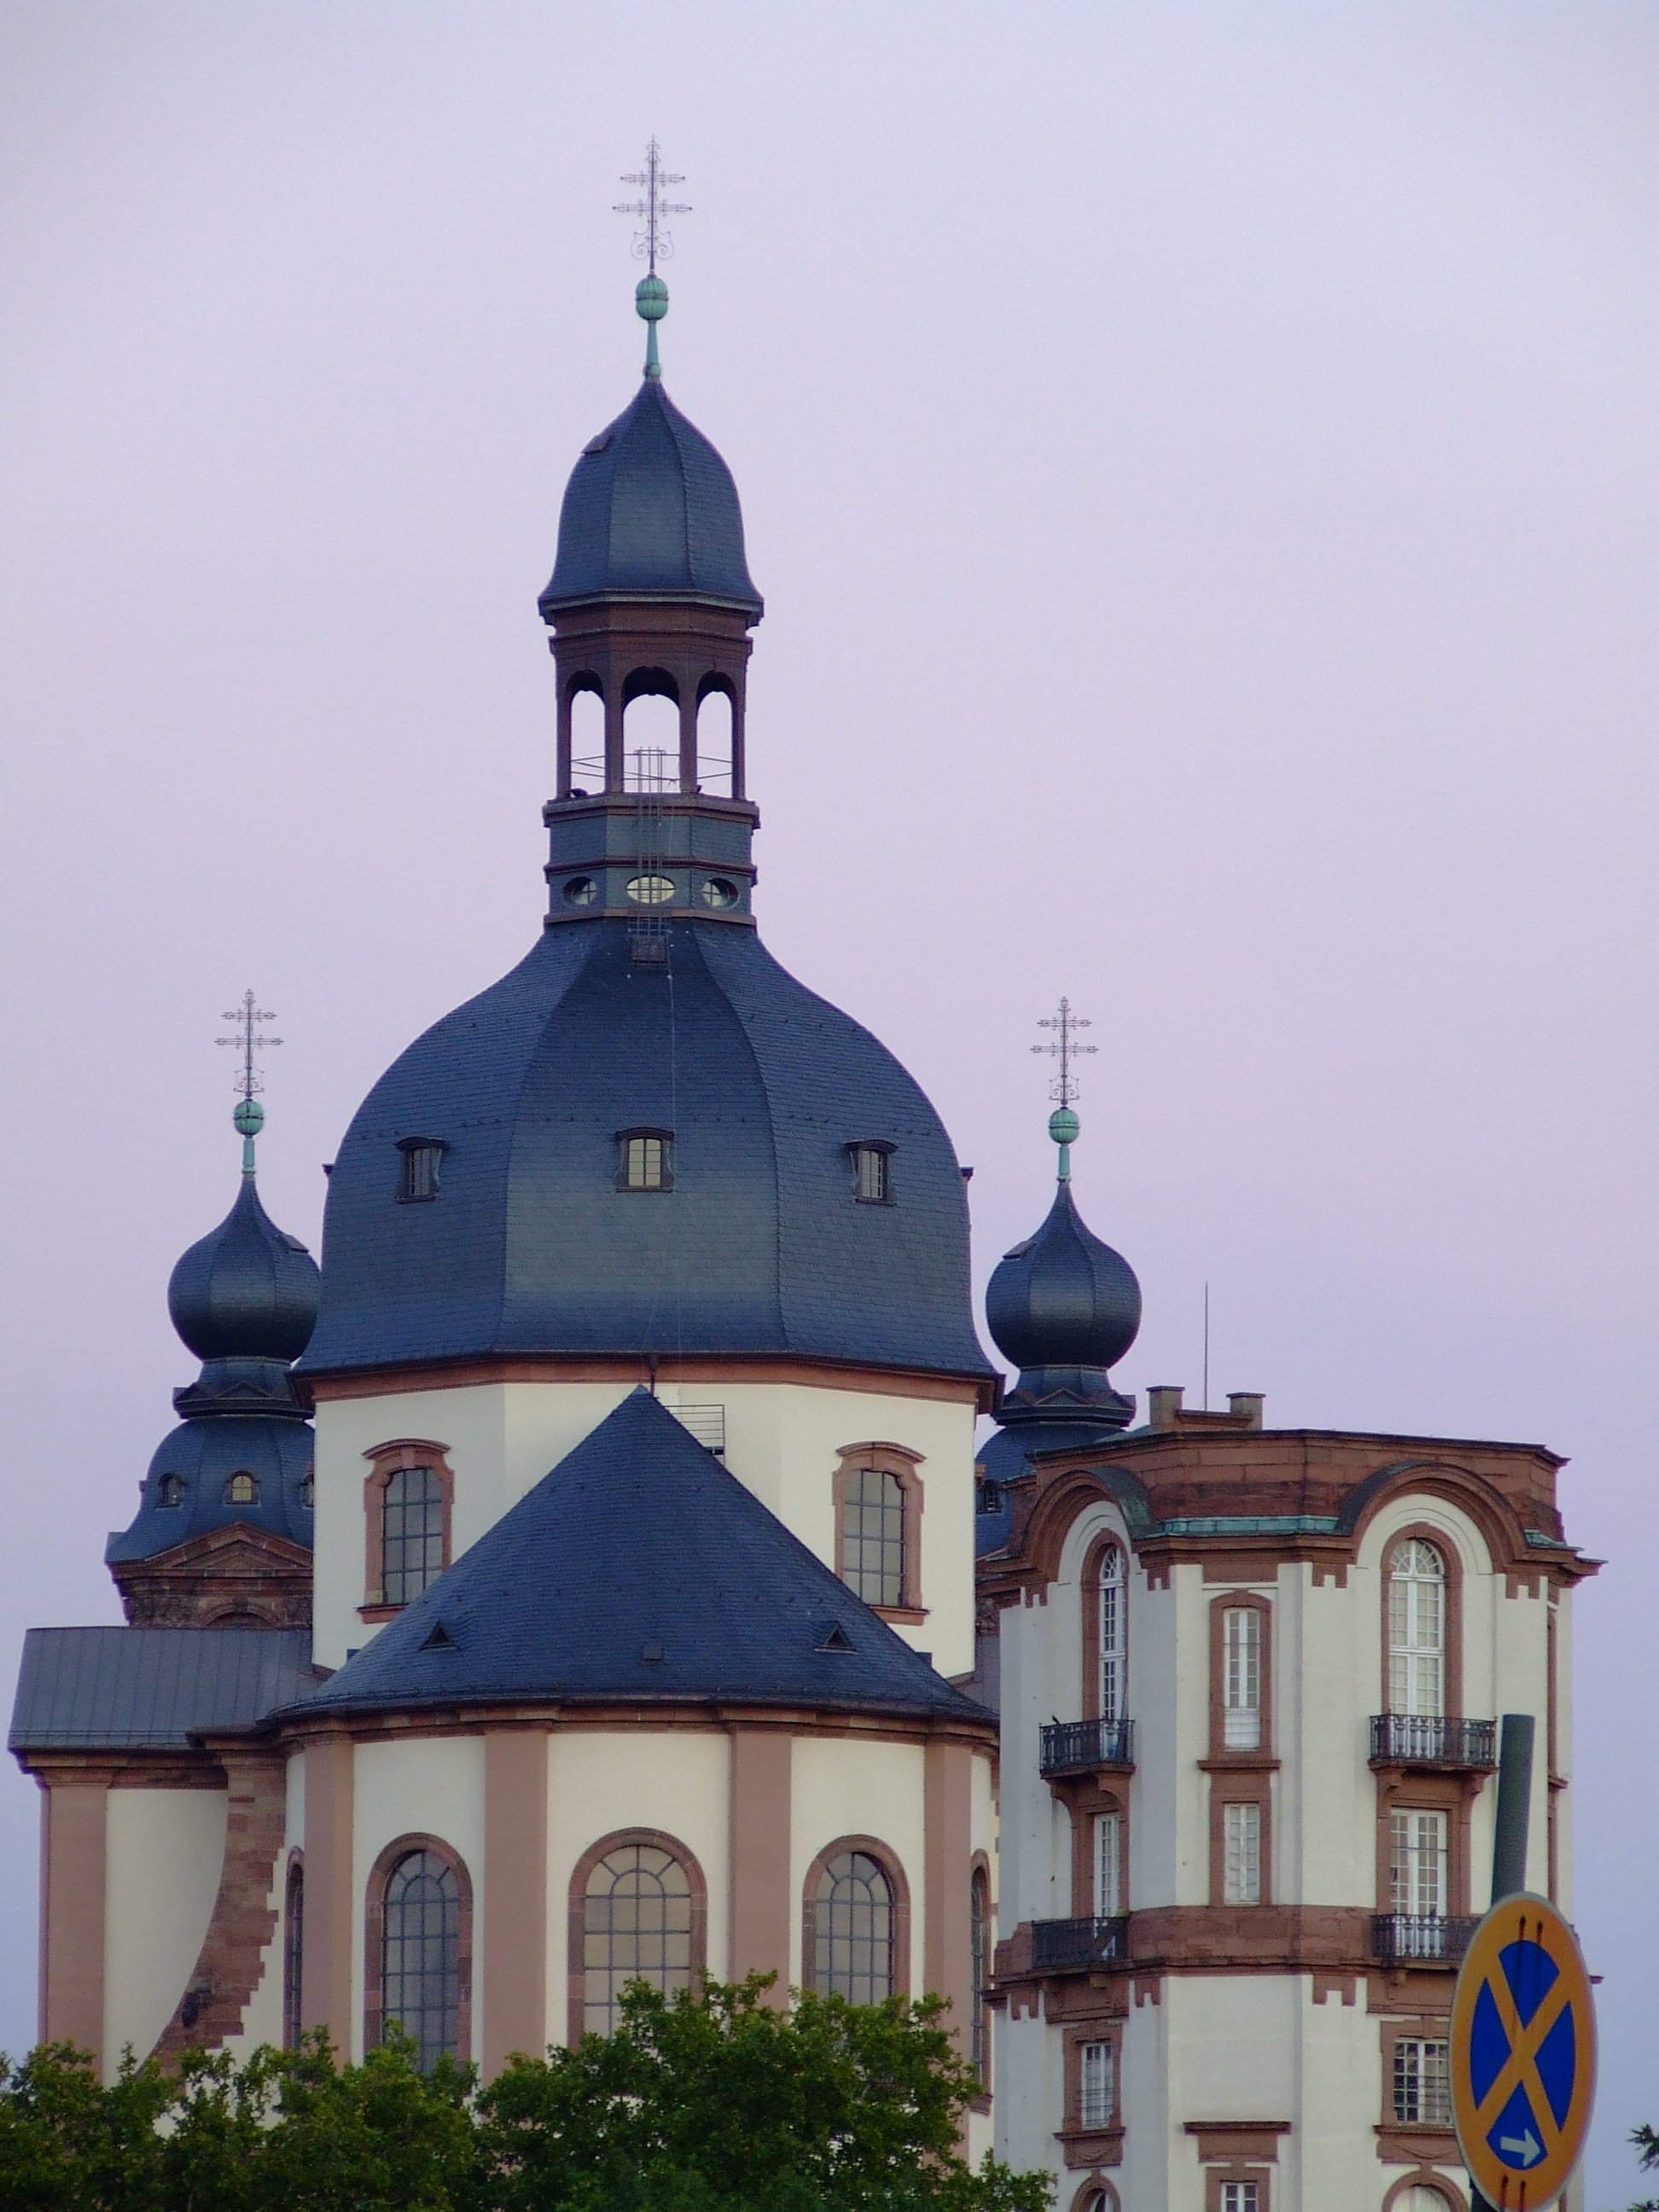 Jesuitenkirche in Mannheim